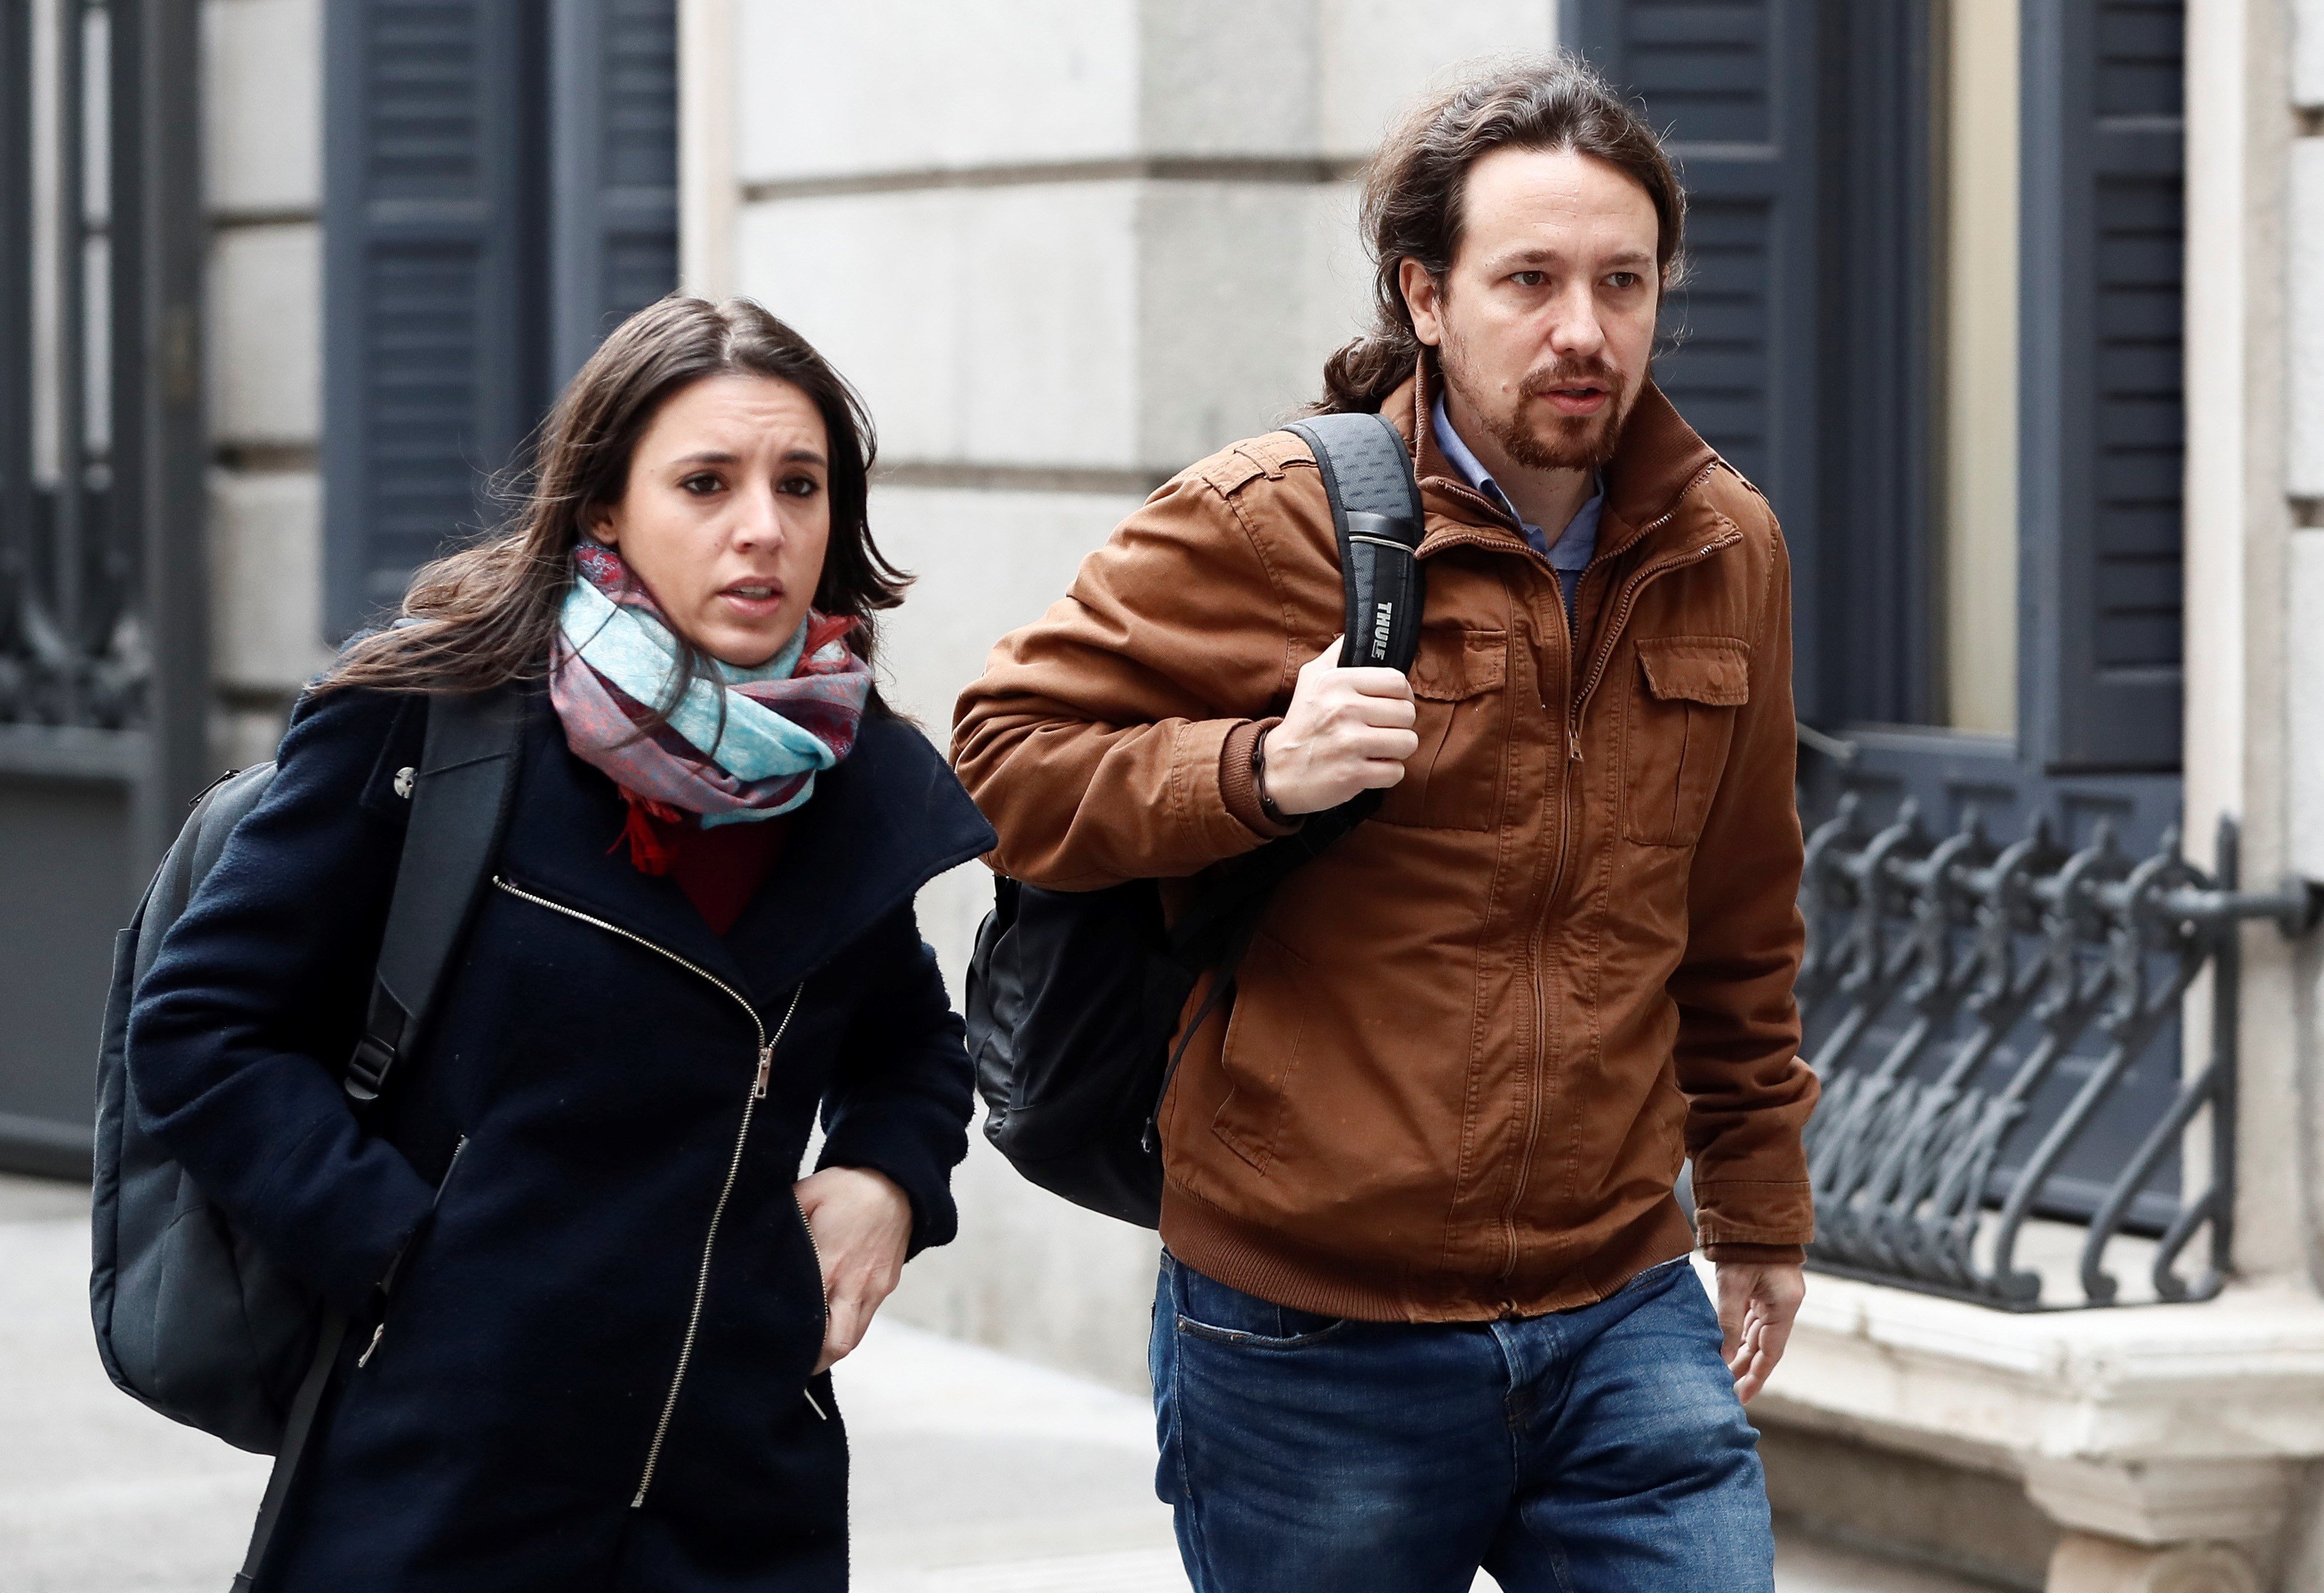 Irene Montero y Pablo Iglesias anuncian embarazo: "Llegan dos criaturas"